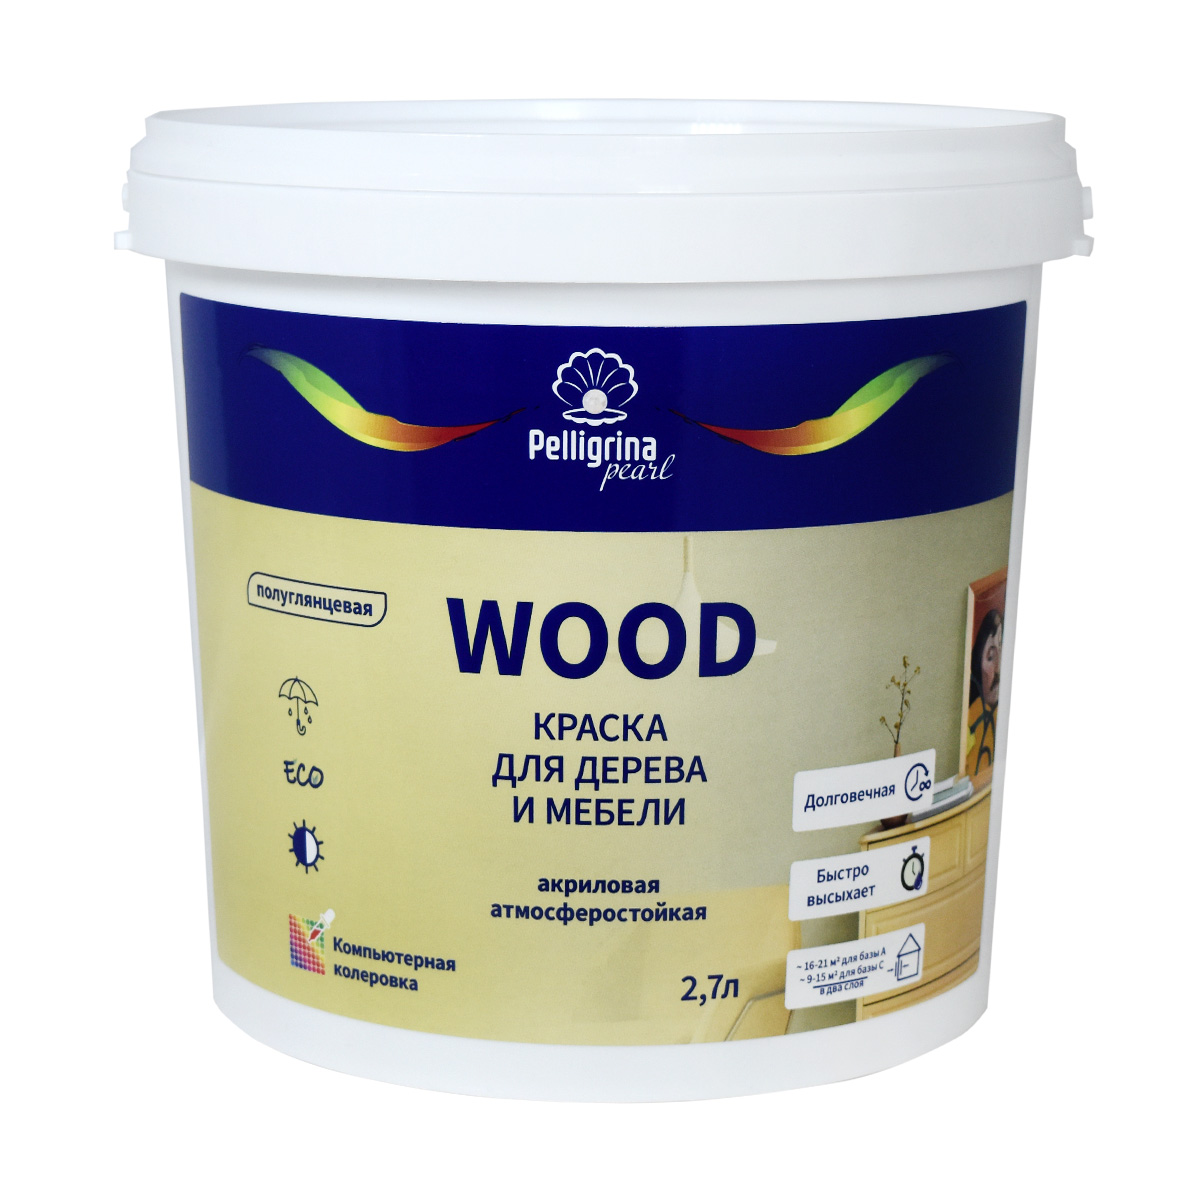 Краска для дерева и мебели Pelligrina Pearl Wood, акриловая, база A, белая, 2,7 л краска olsta wood paint для дерева a 2 7 л